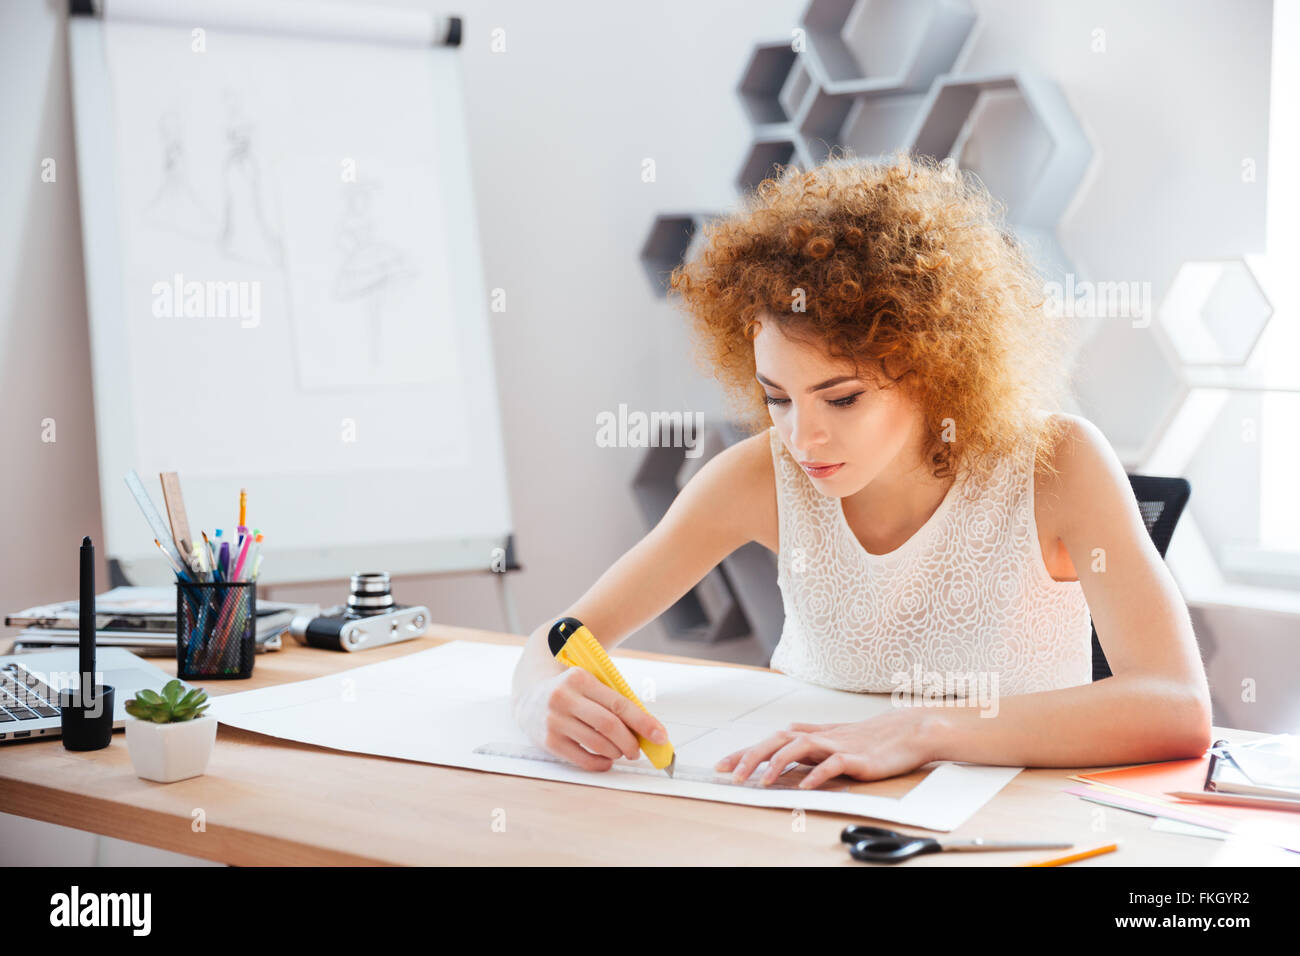 Schöne fokussierte junge Frau Fotograf Cuttung Blatt Papier mit Briefpapier Messer und Lineal auf ihrem Arbeitsplatz Stockfoto